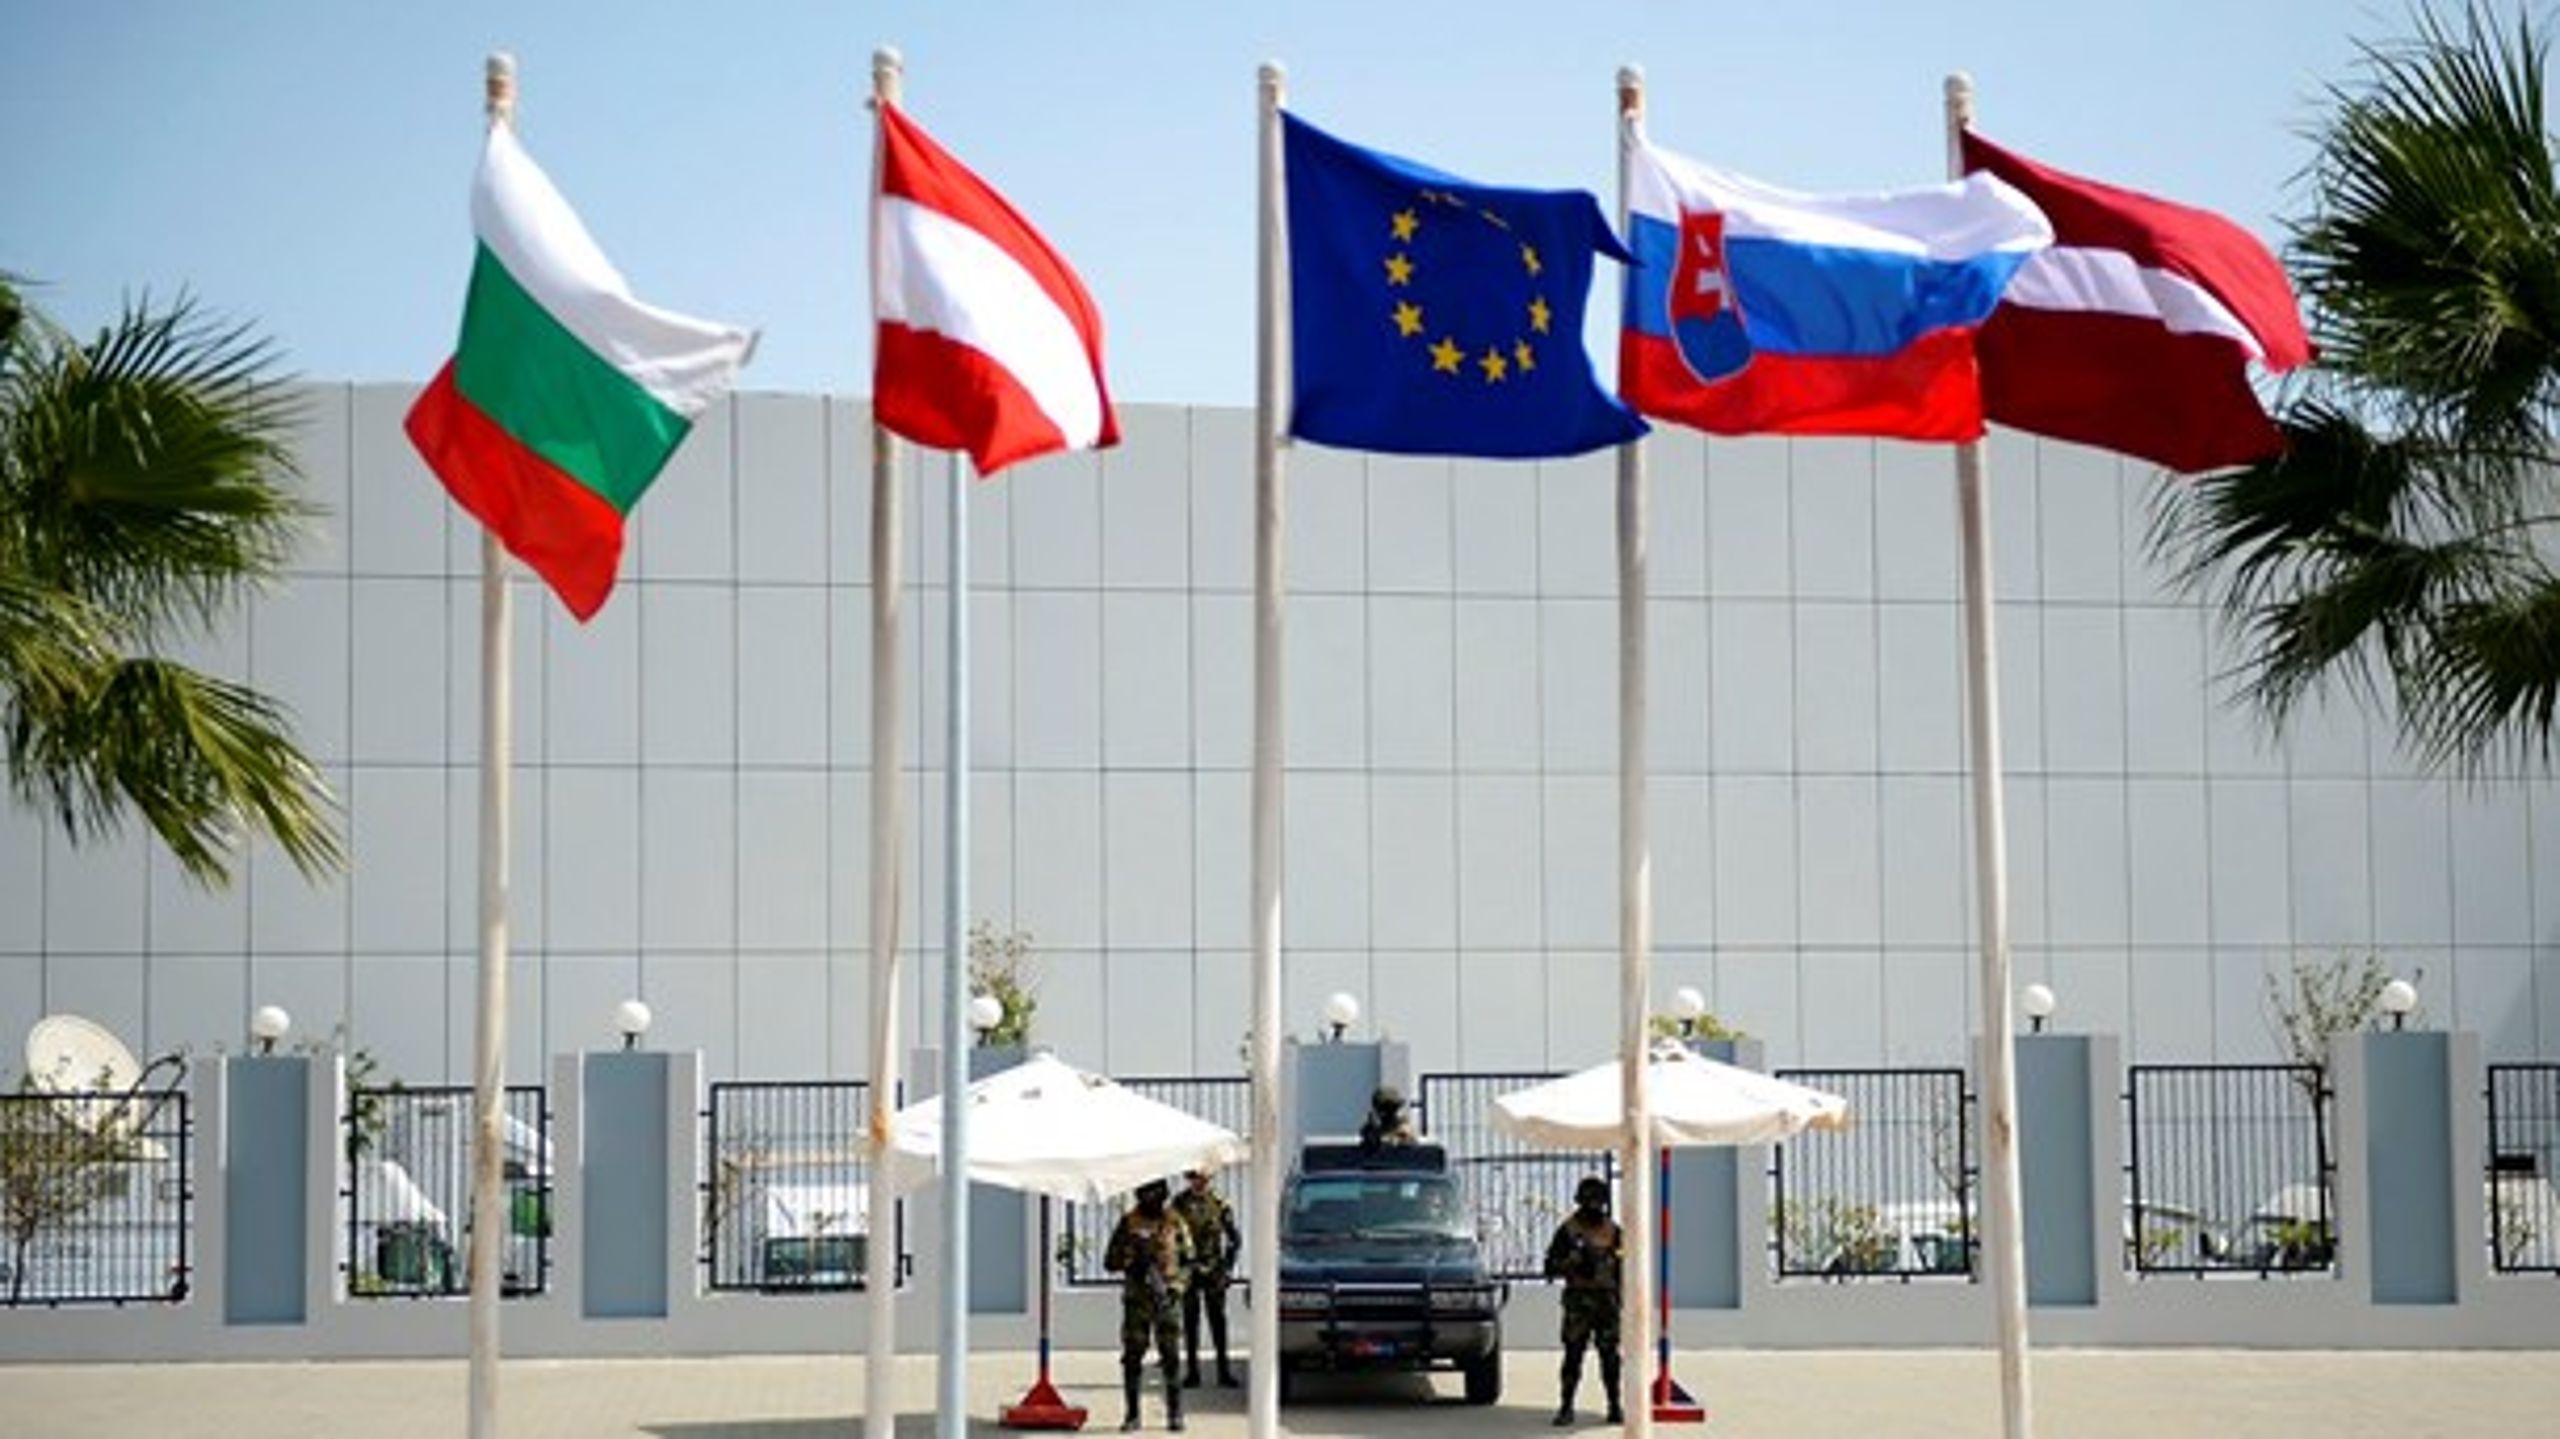 Det første møde nogensinde mellem EU-ledere og Den Arabiske Liga finder sted i den egyptiske badeby Sharm el-Sheikh.